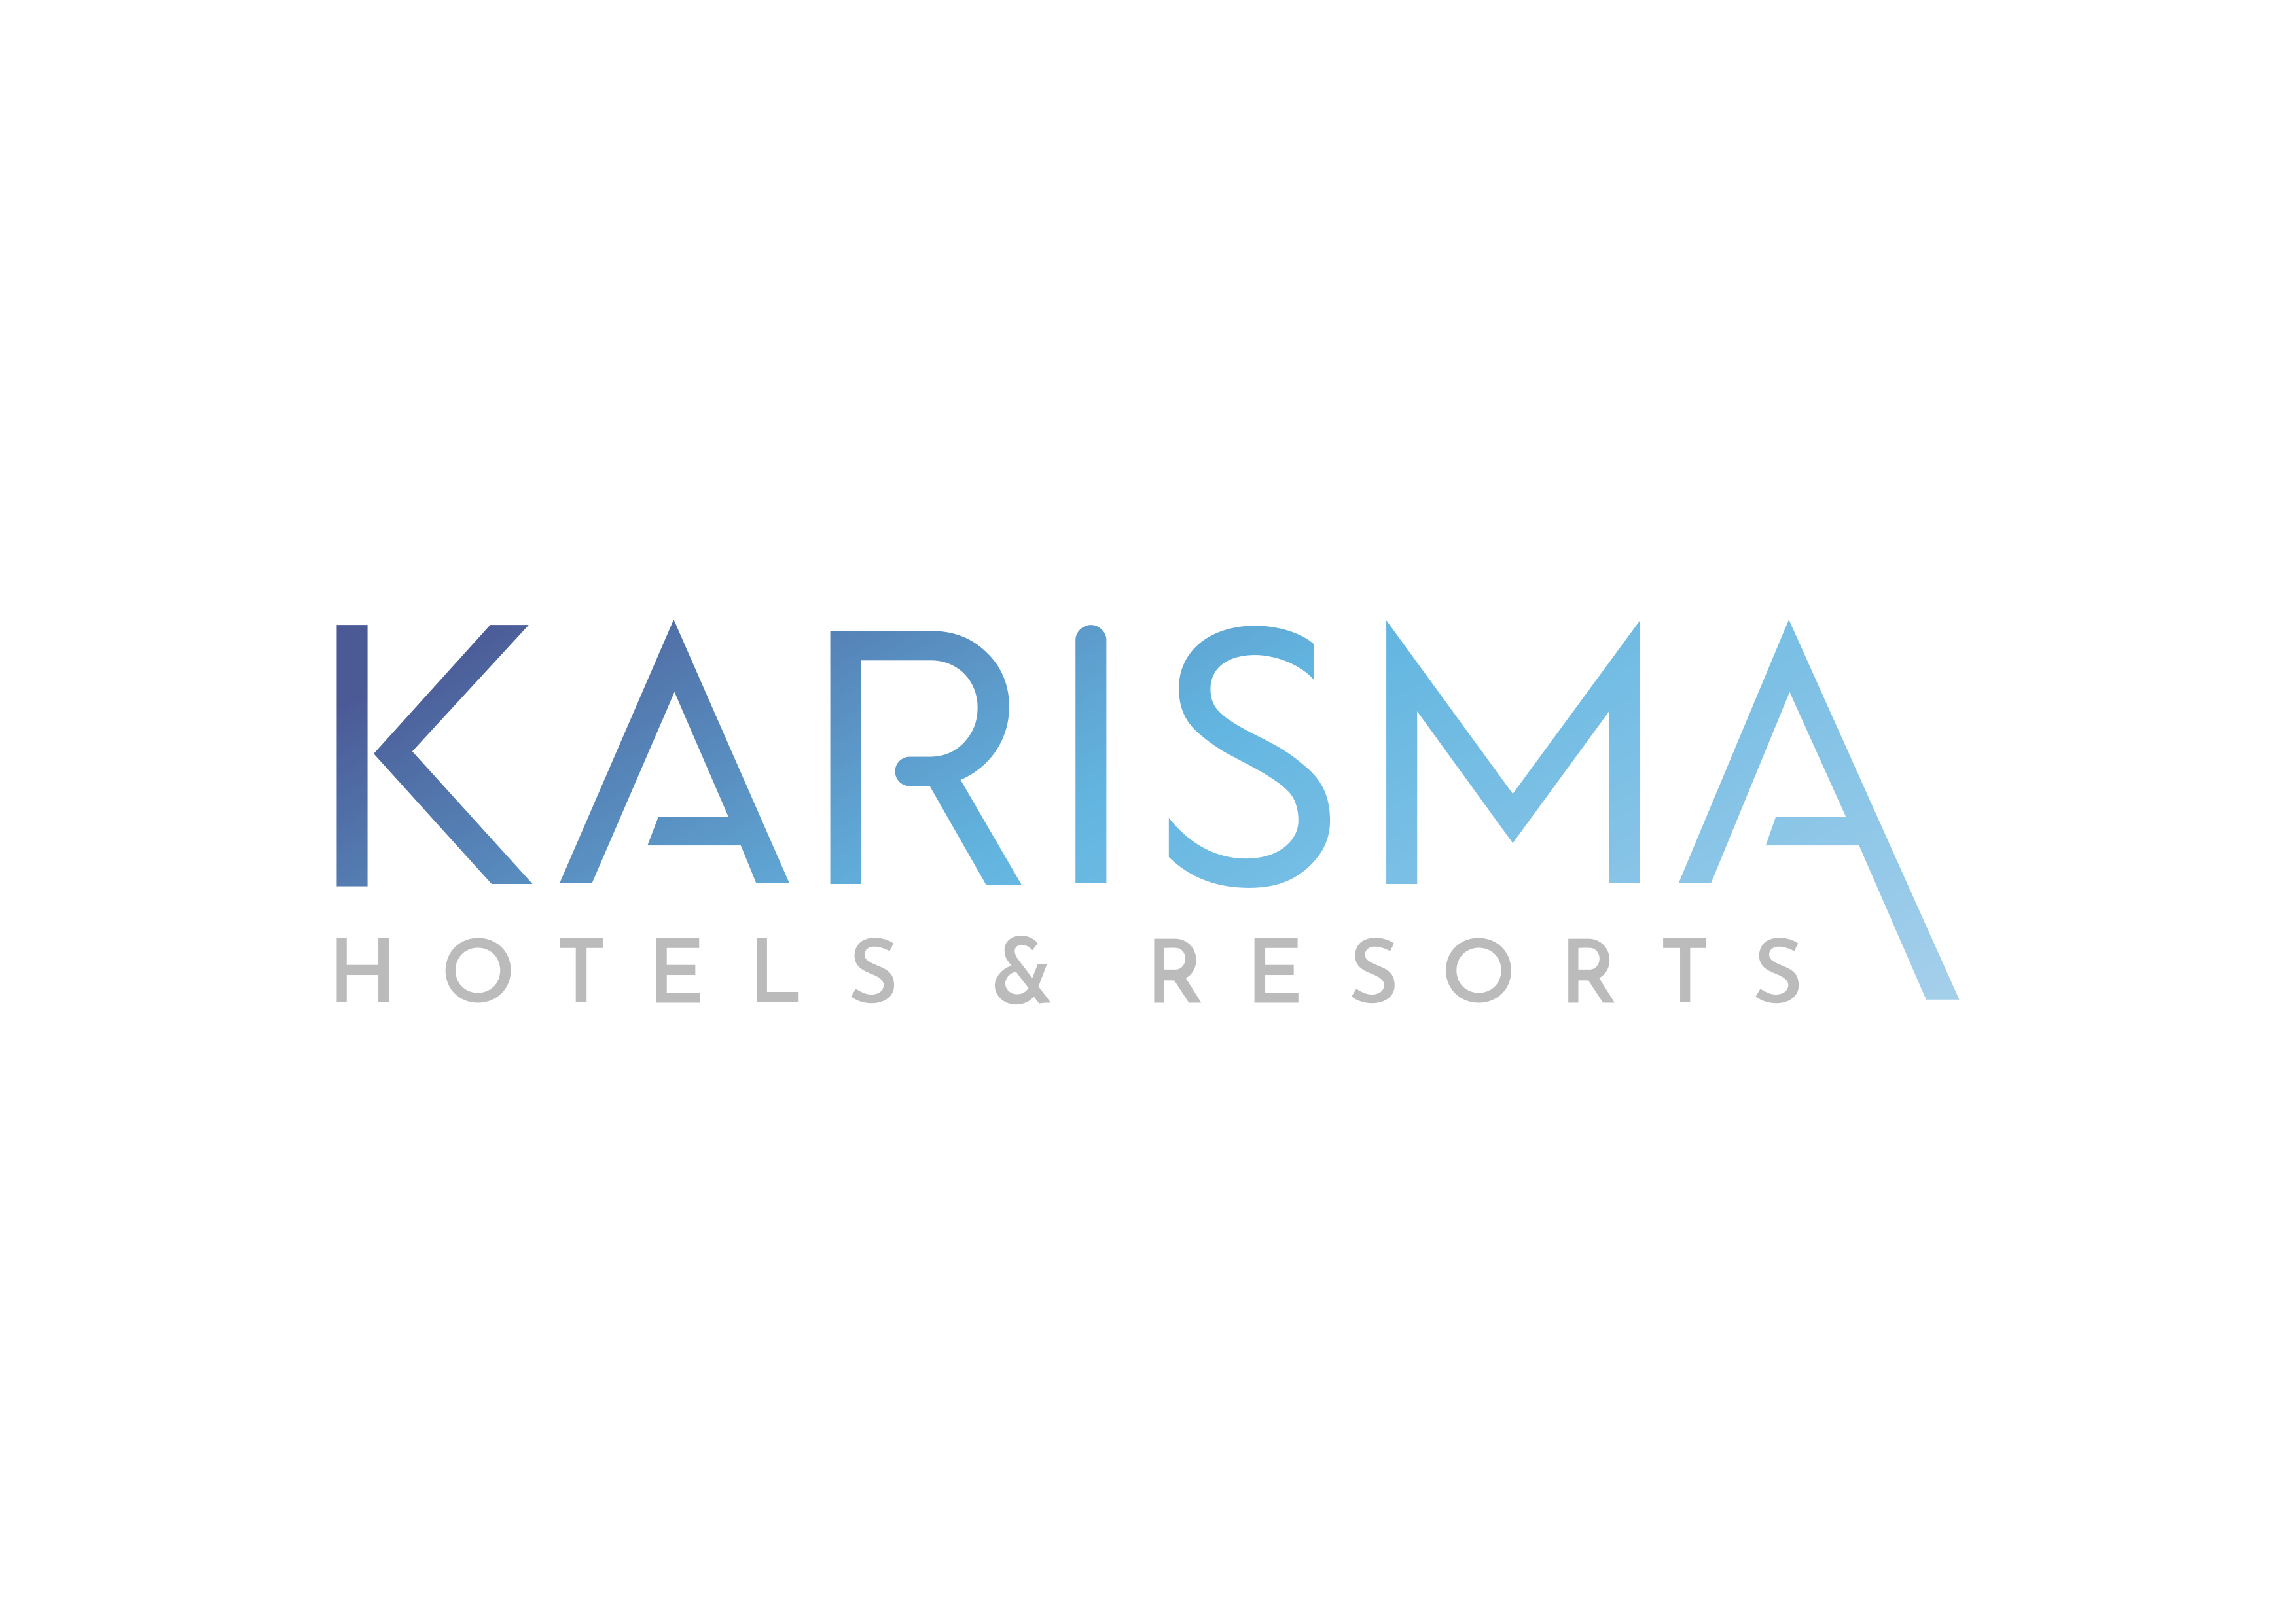 Karisma Hotels & Resorts implementó un sistema de Gestión Colaborativa para seis unidades de negocio con Bitrix24